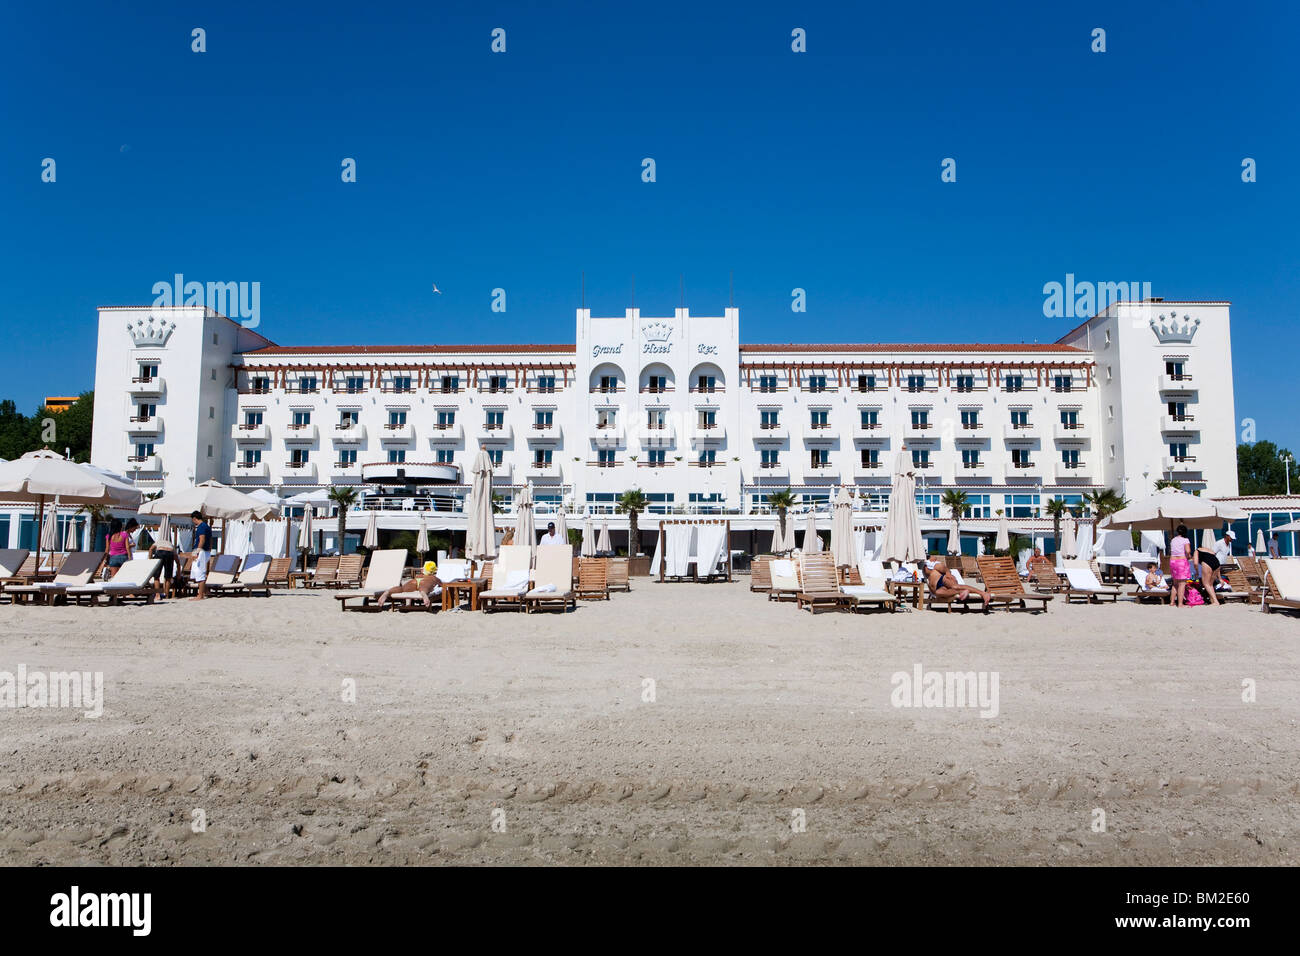 Hotel Rex, Mamaia, Constanta, Romania Stock Photo